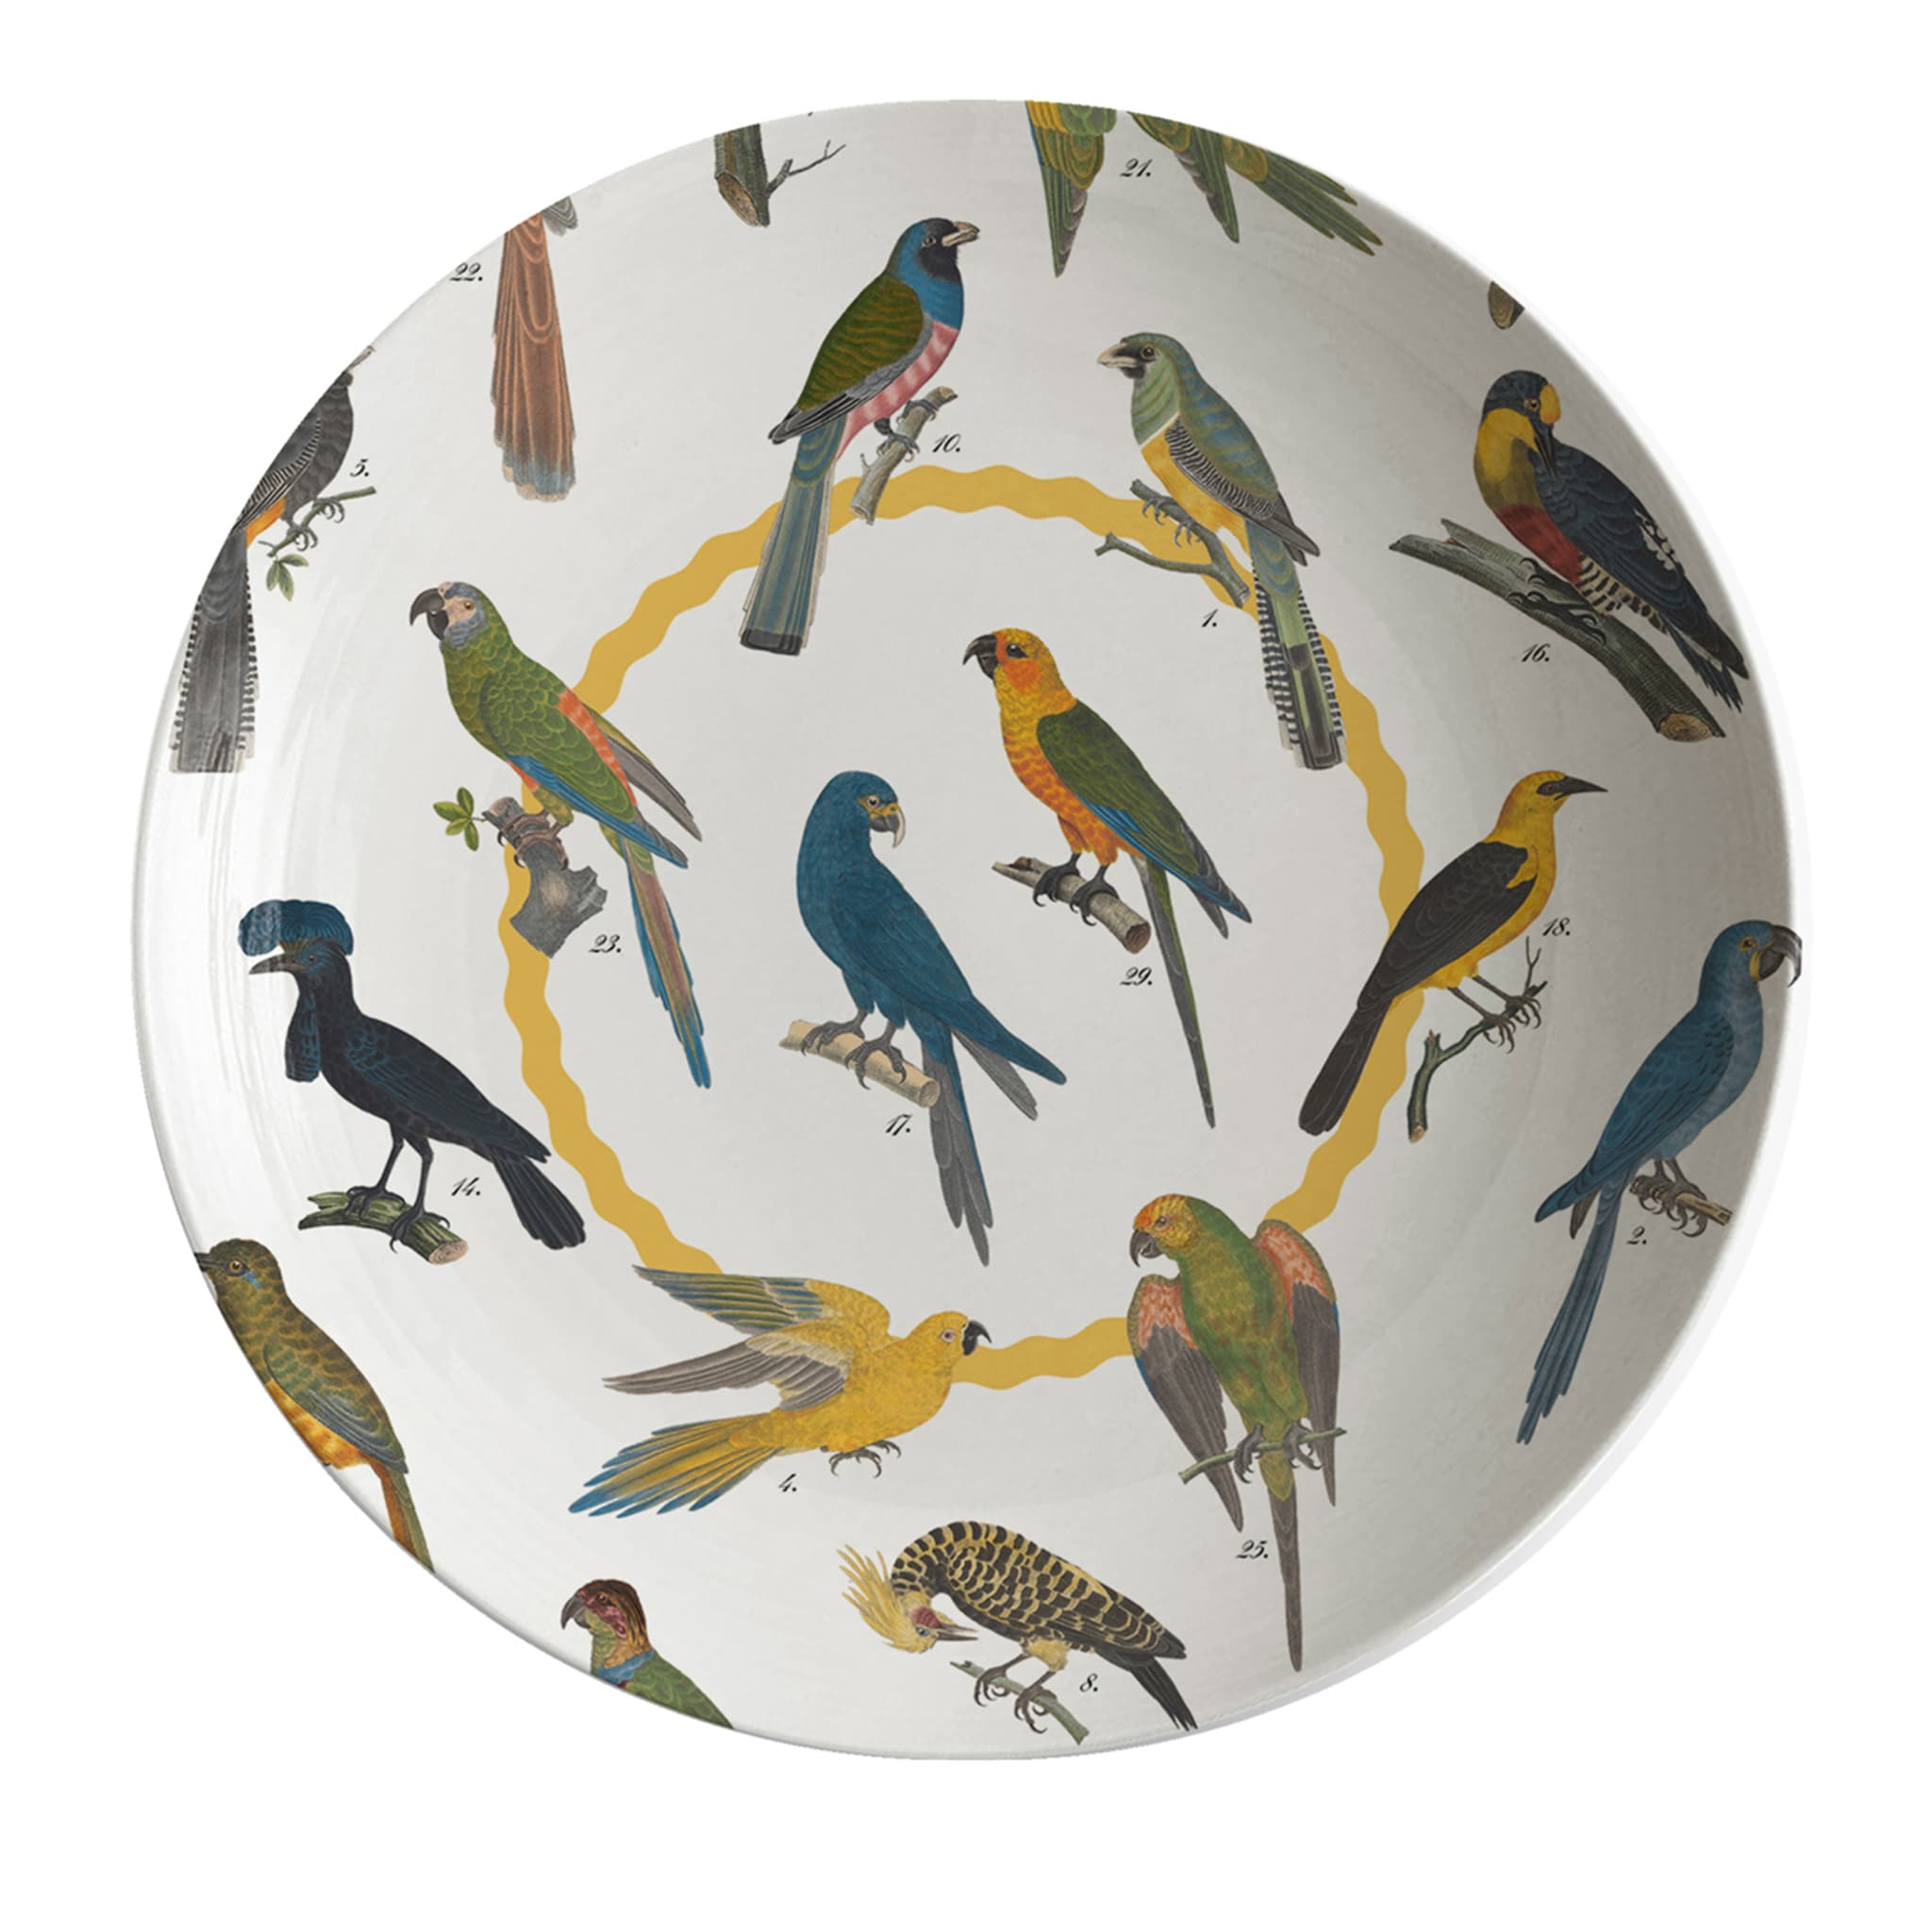 Cabinet De Curiosités Porcelain Soup Plate With Birds - Main view